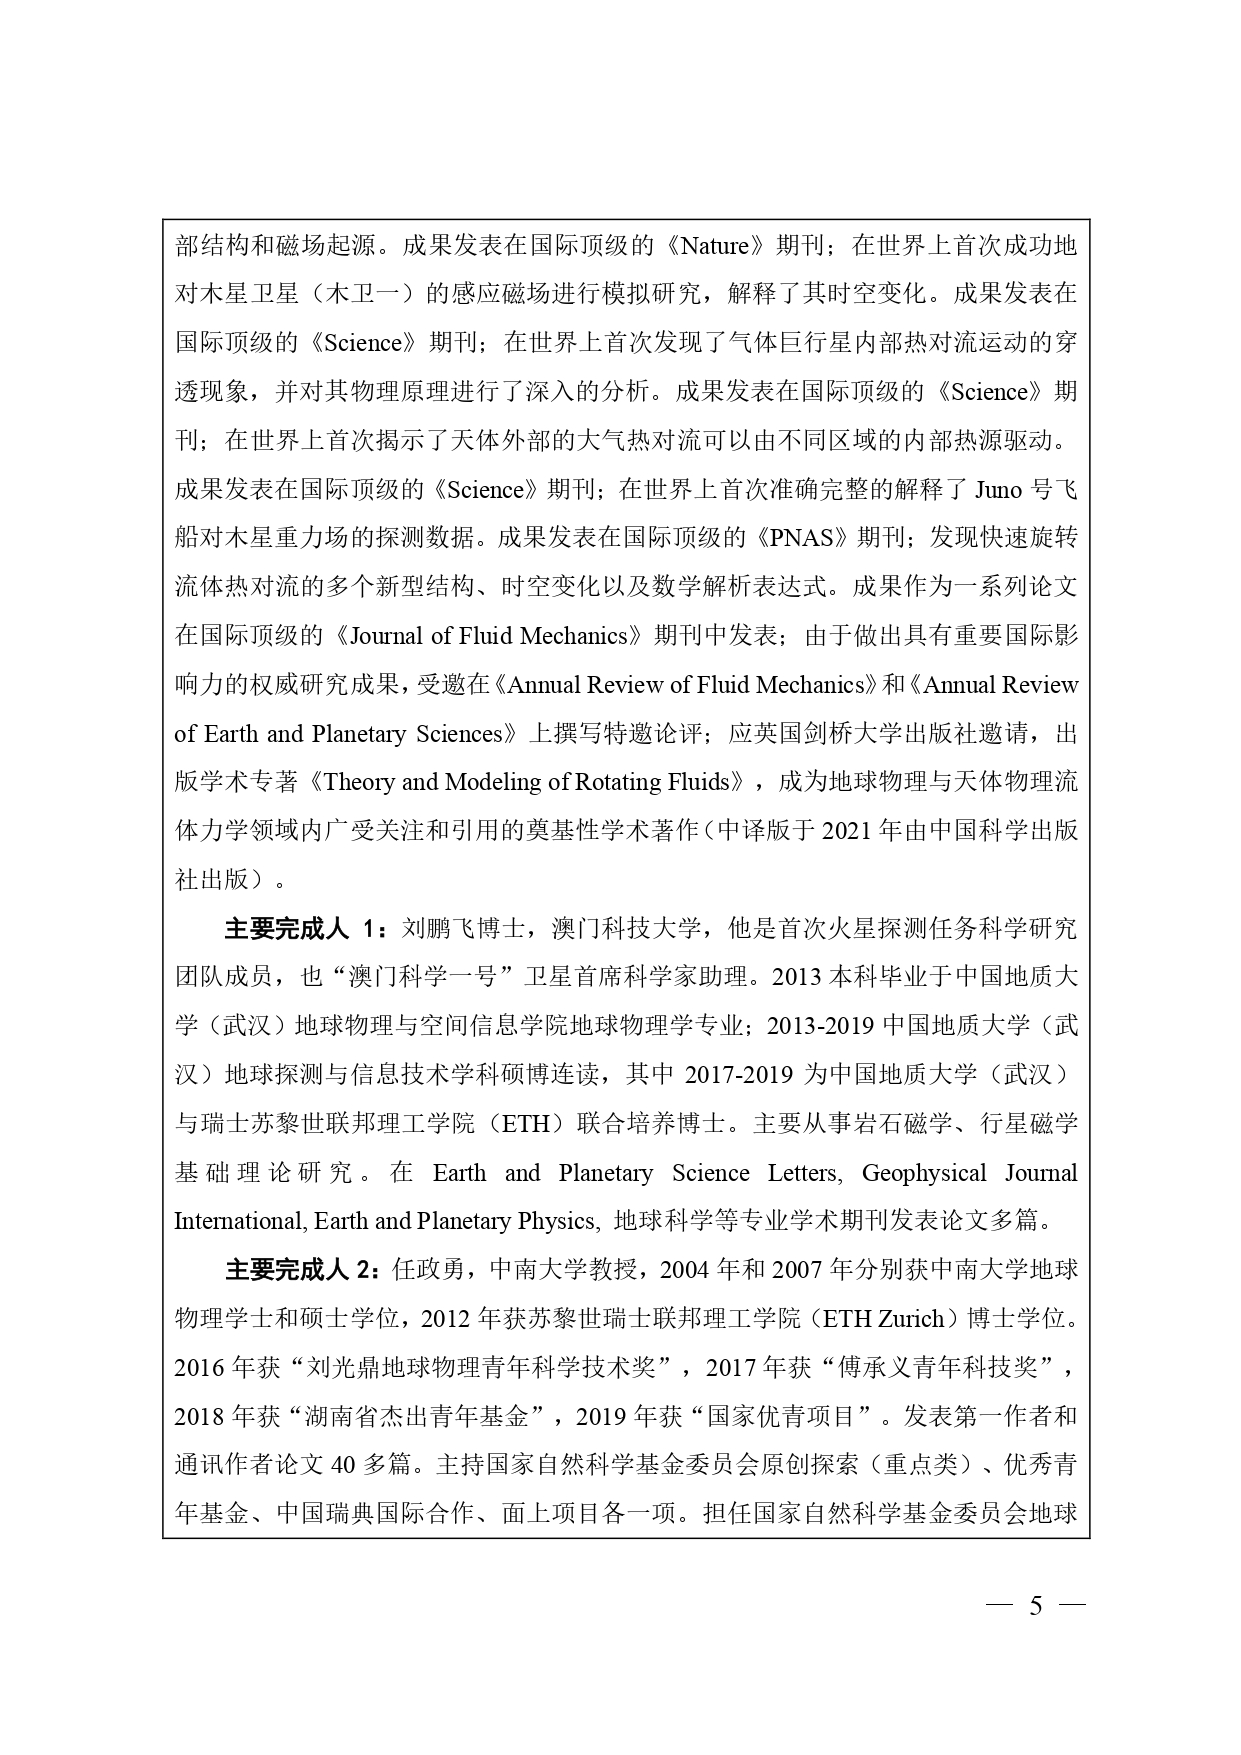 中国高等学校十大科技进展申报表 张可可终版3 page 0005